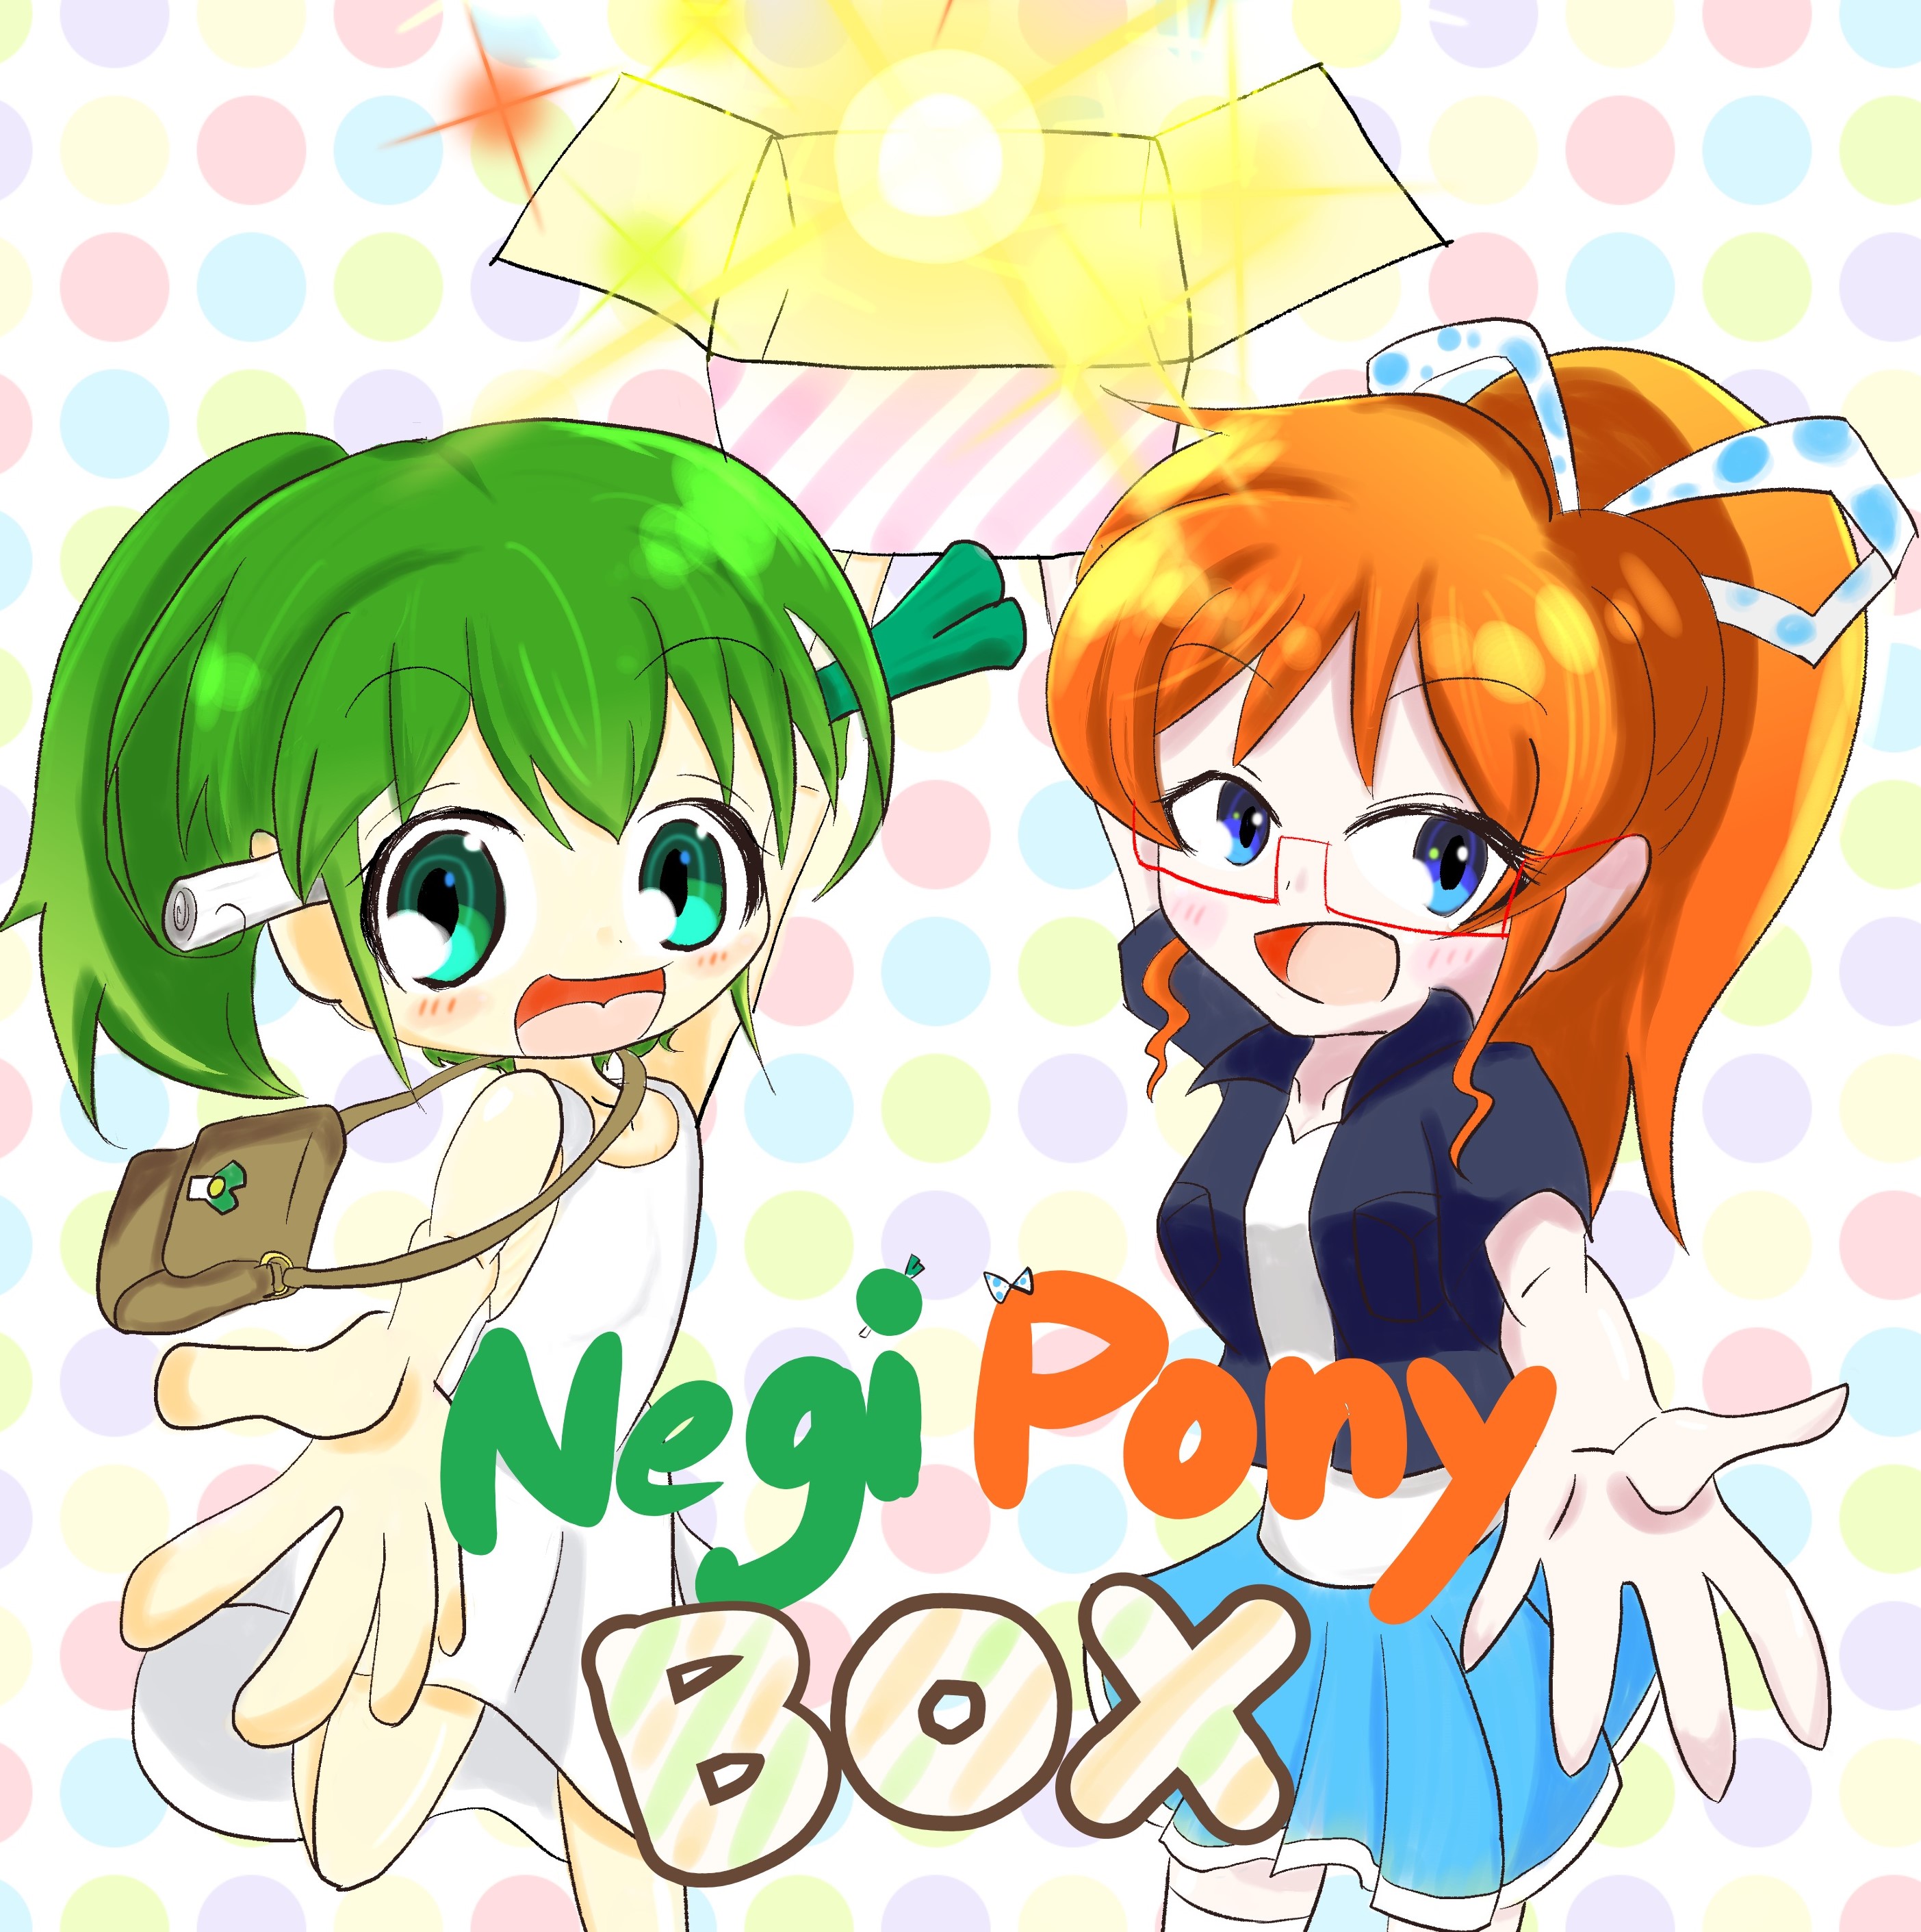 NEGIPONY BOX